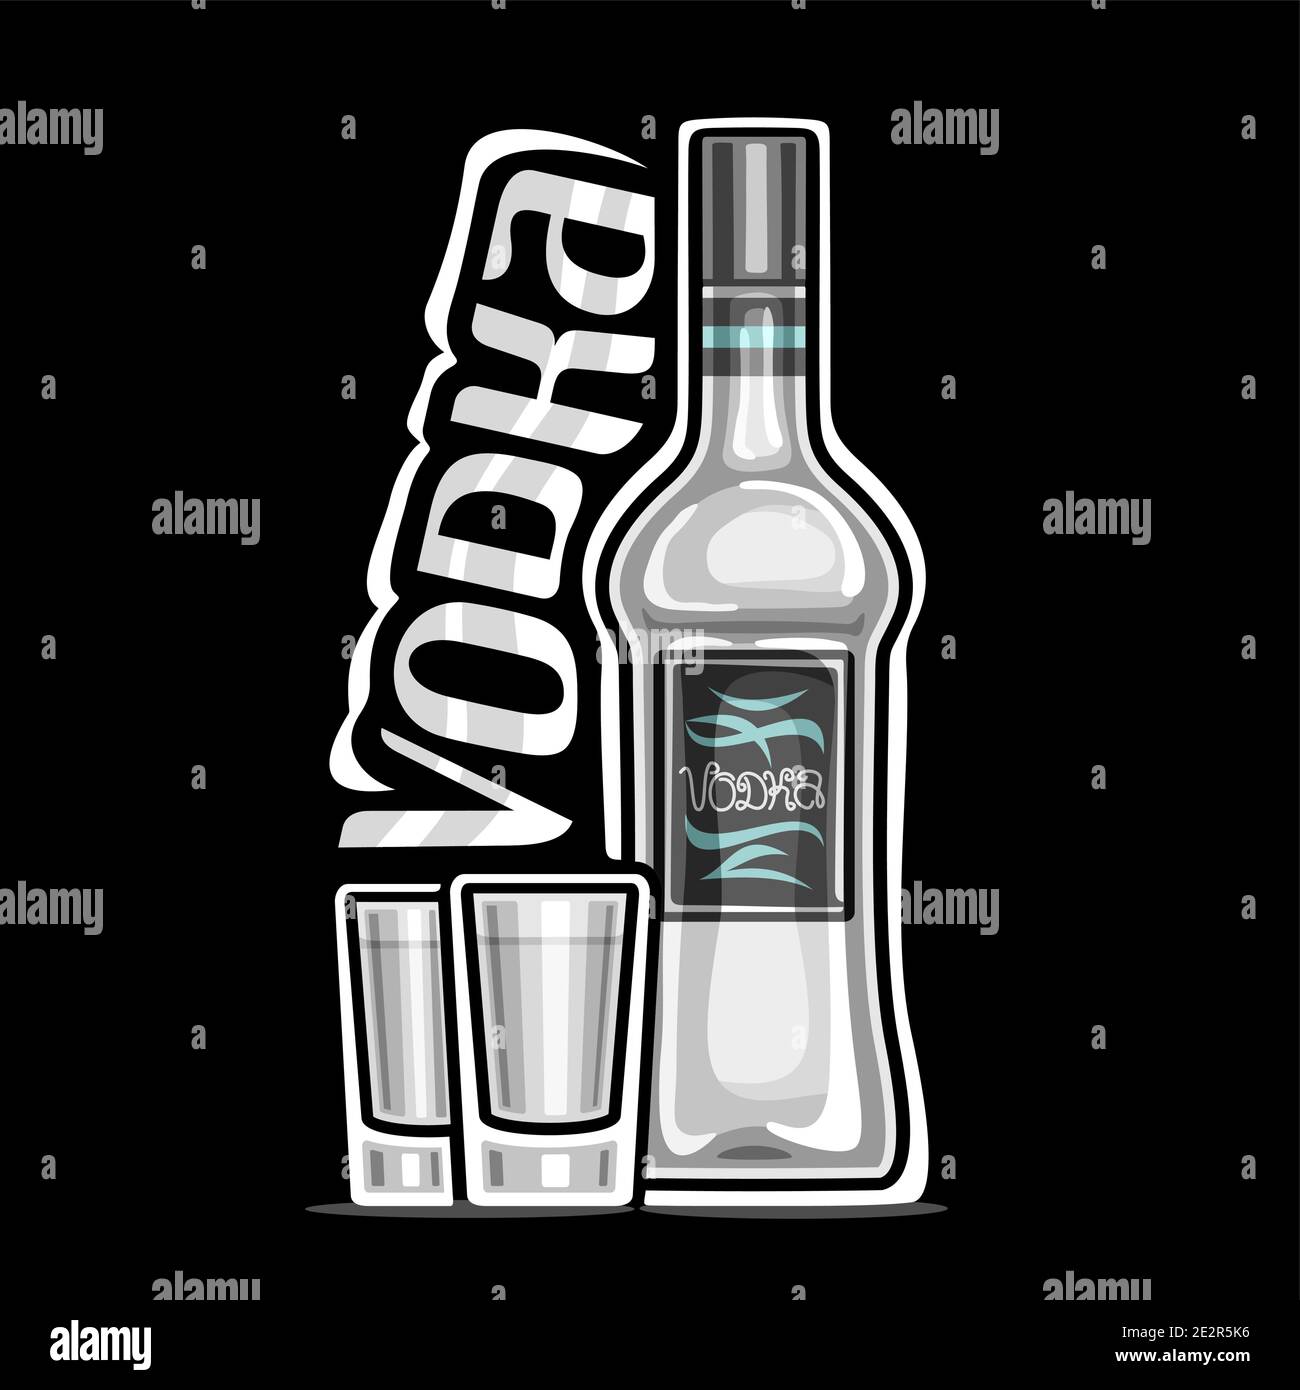 Vektor-Logo für Vodka, Umriss Illustration der weißen Flasche mit dekorativem Etikett und 2 Vollgeschossen Gläser mit gekühltem Wodka, quadratische Plakette mit uniq Stock Vektor